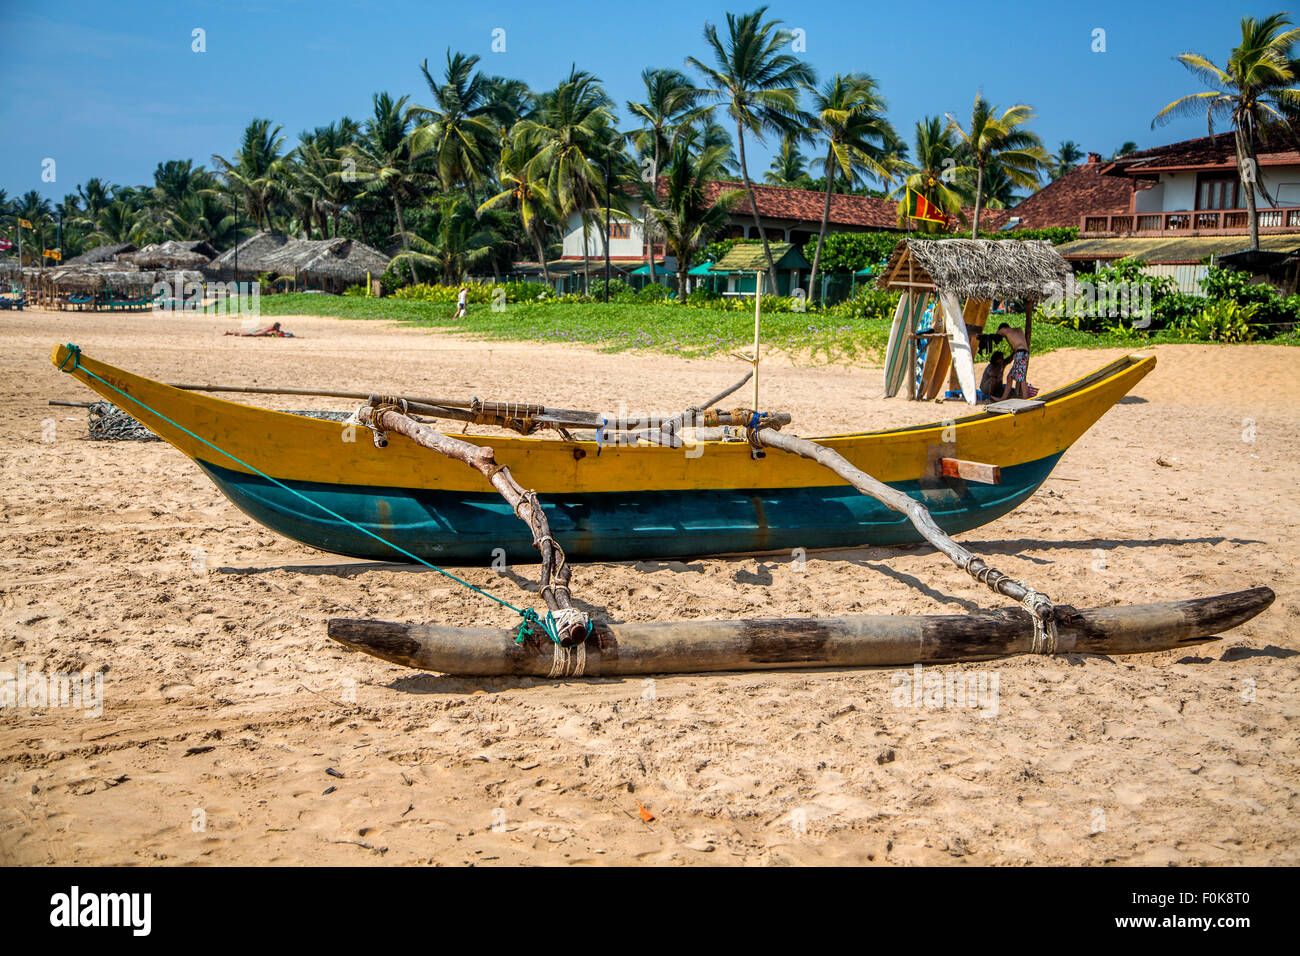 Traditional Sri Lankan fishing boat Stock Photo